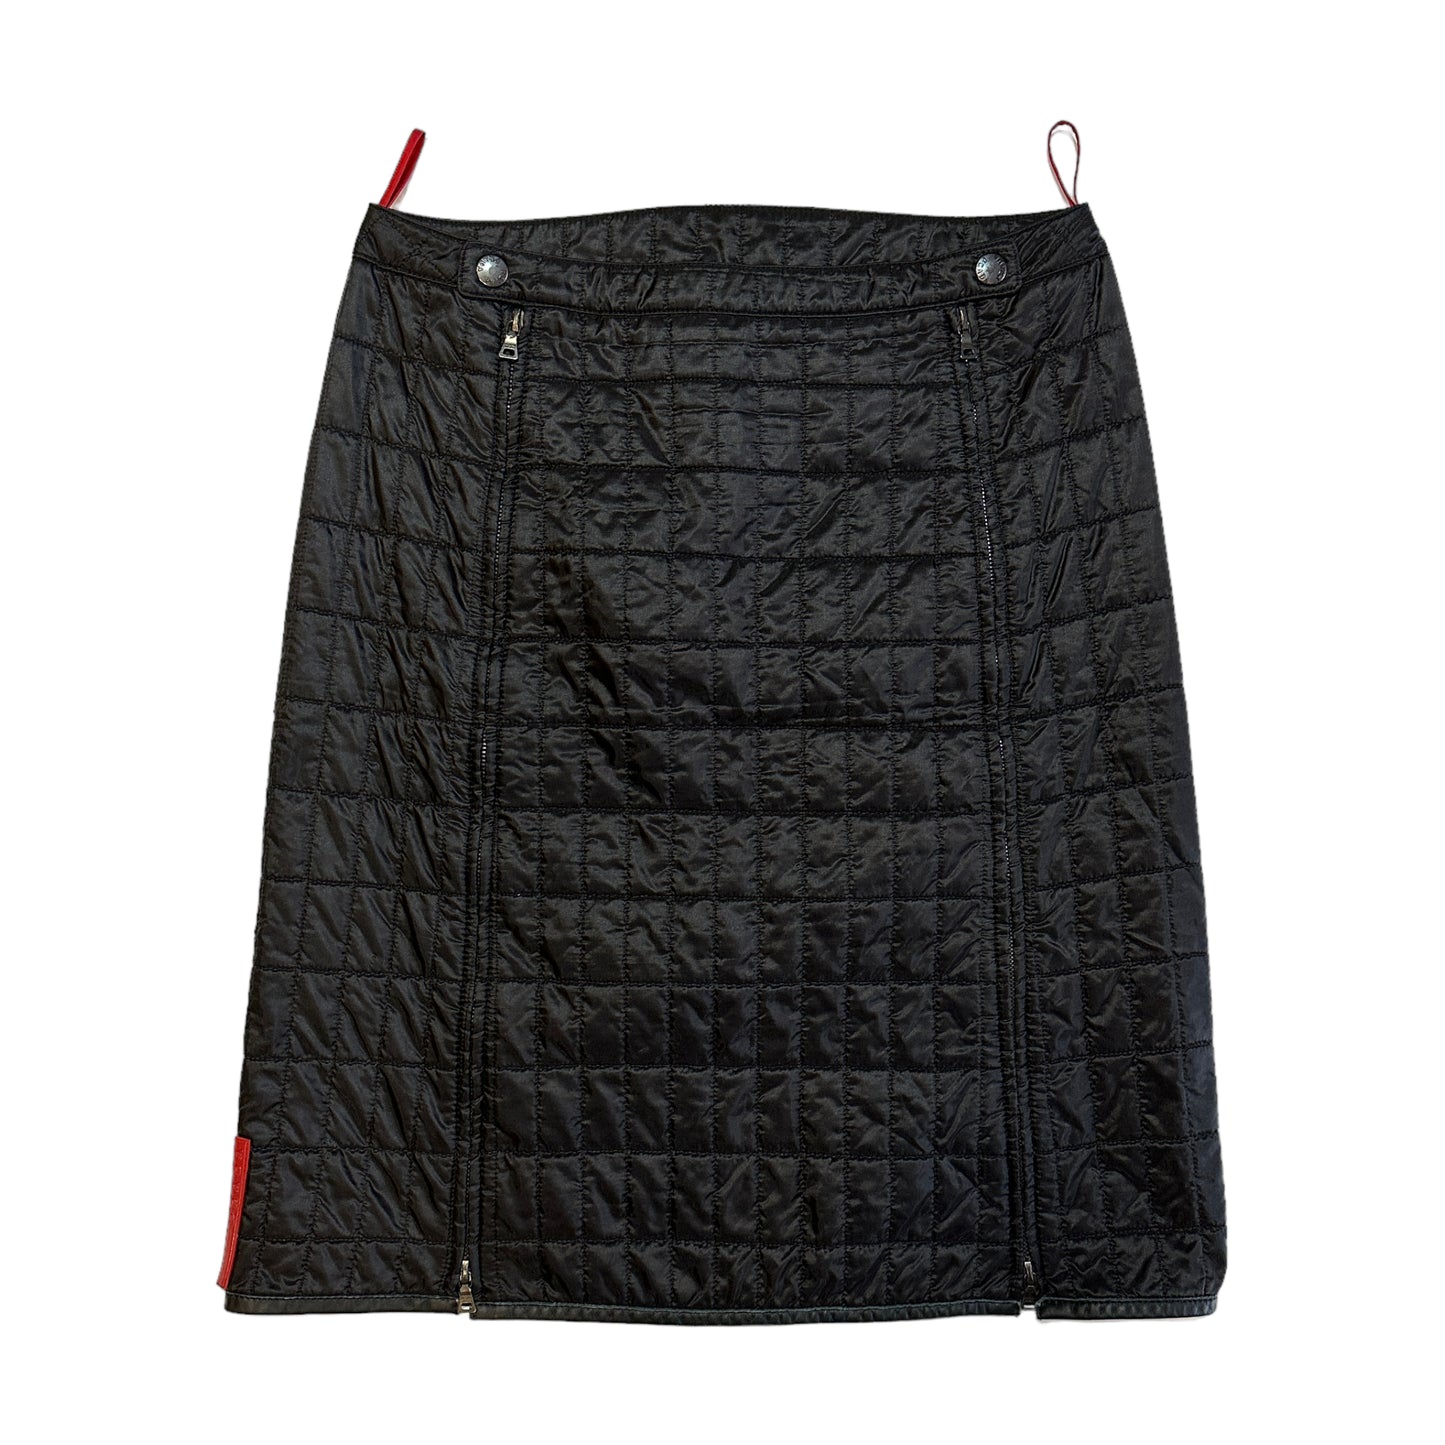 2000's Padded Skirt (40W)